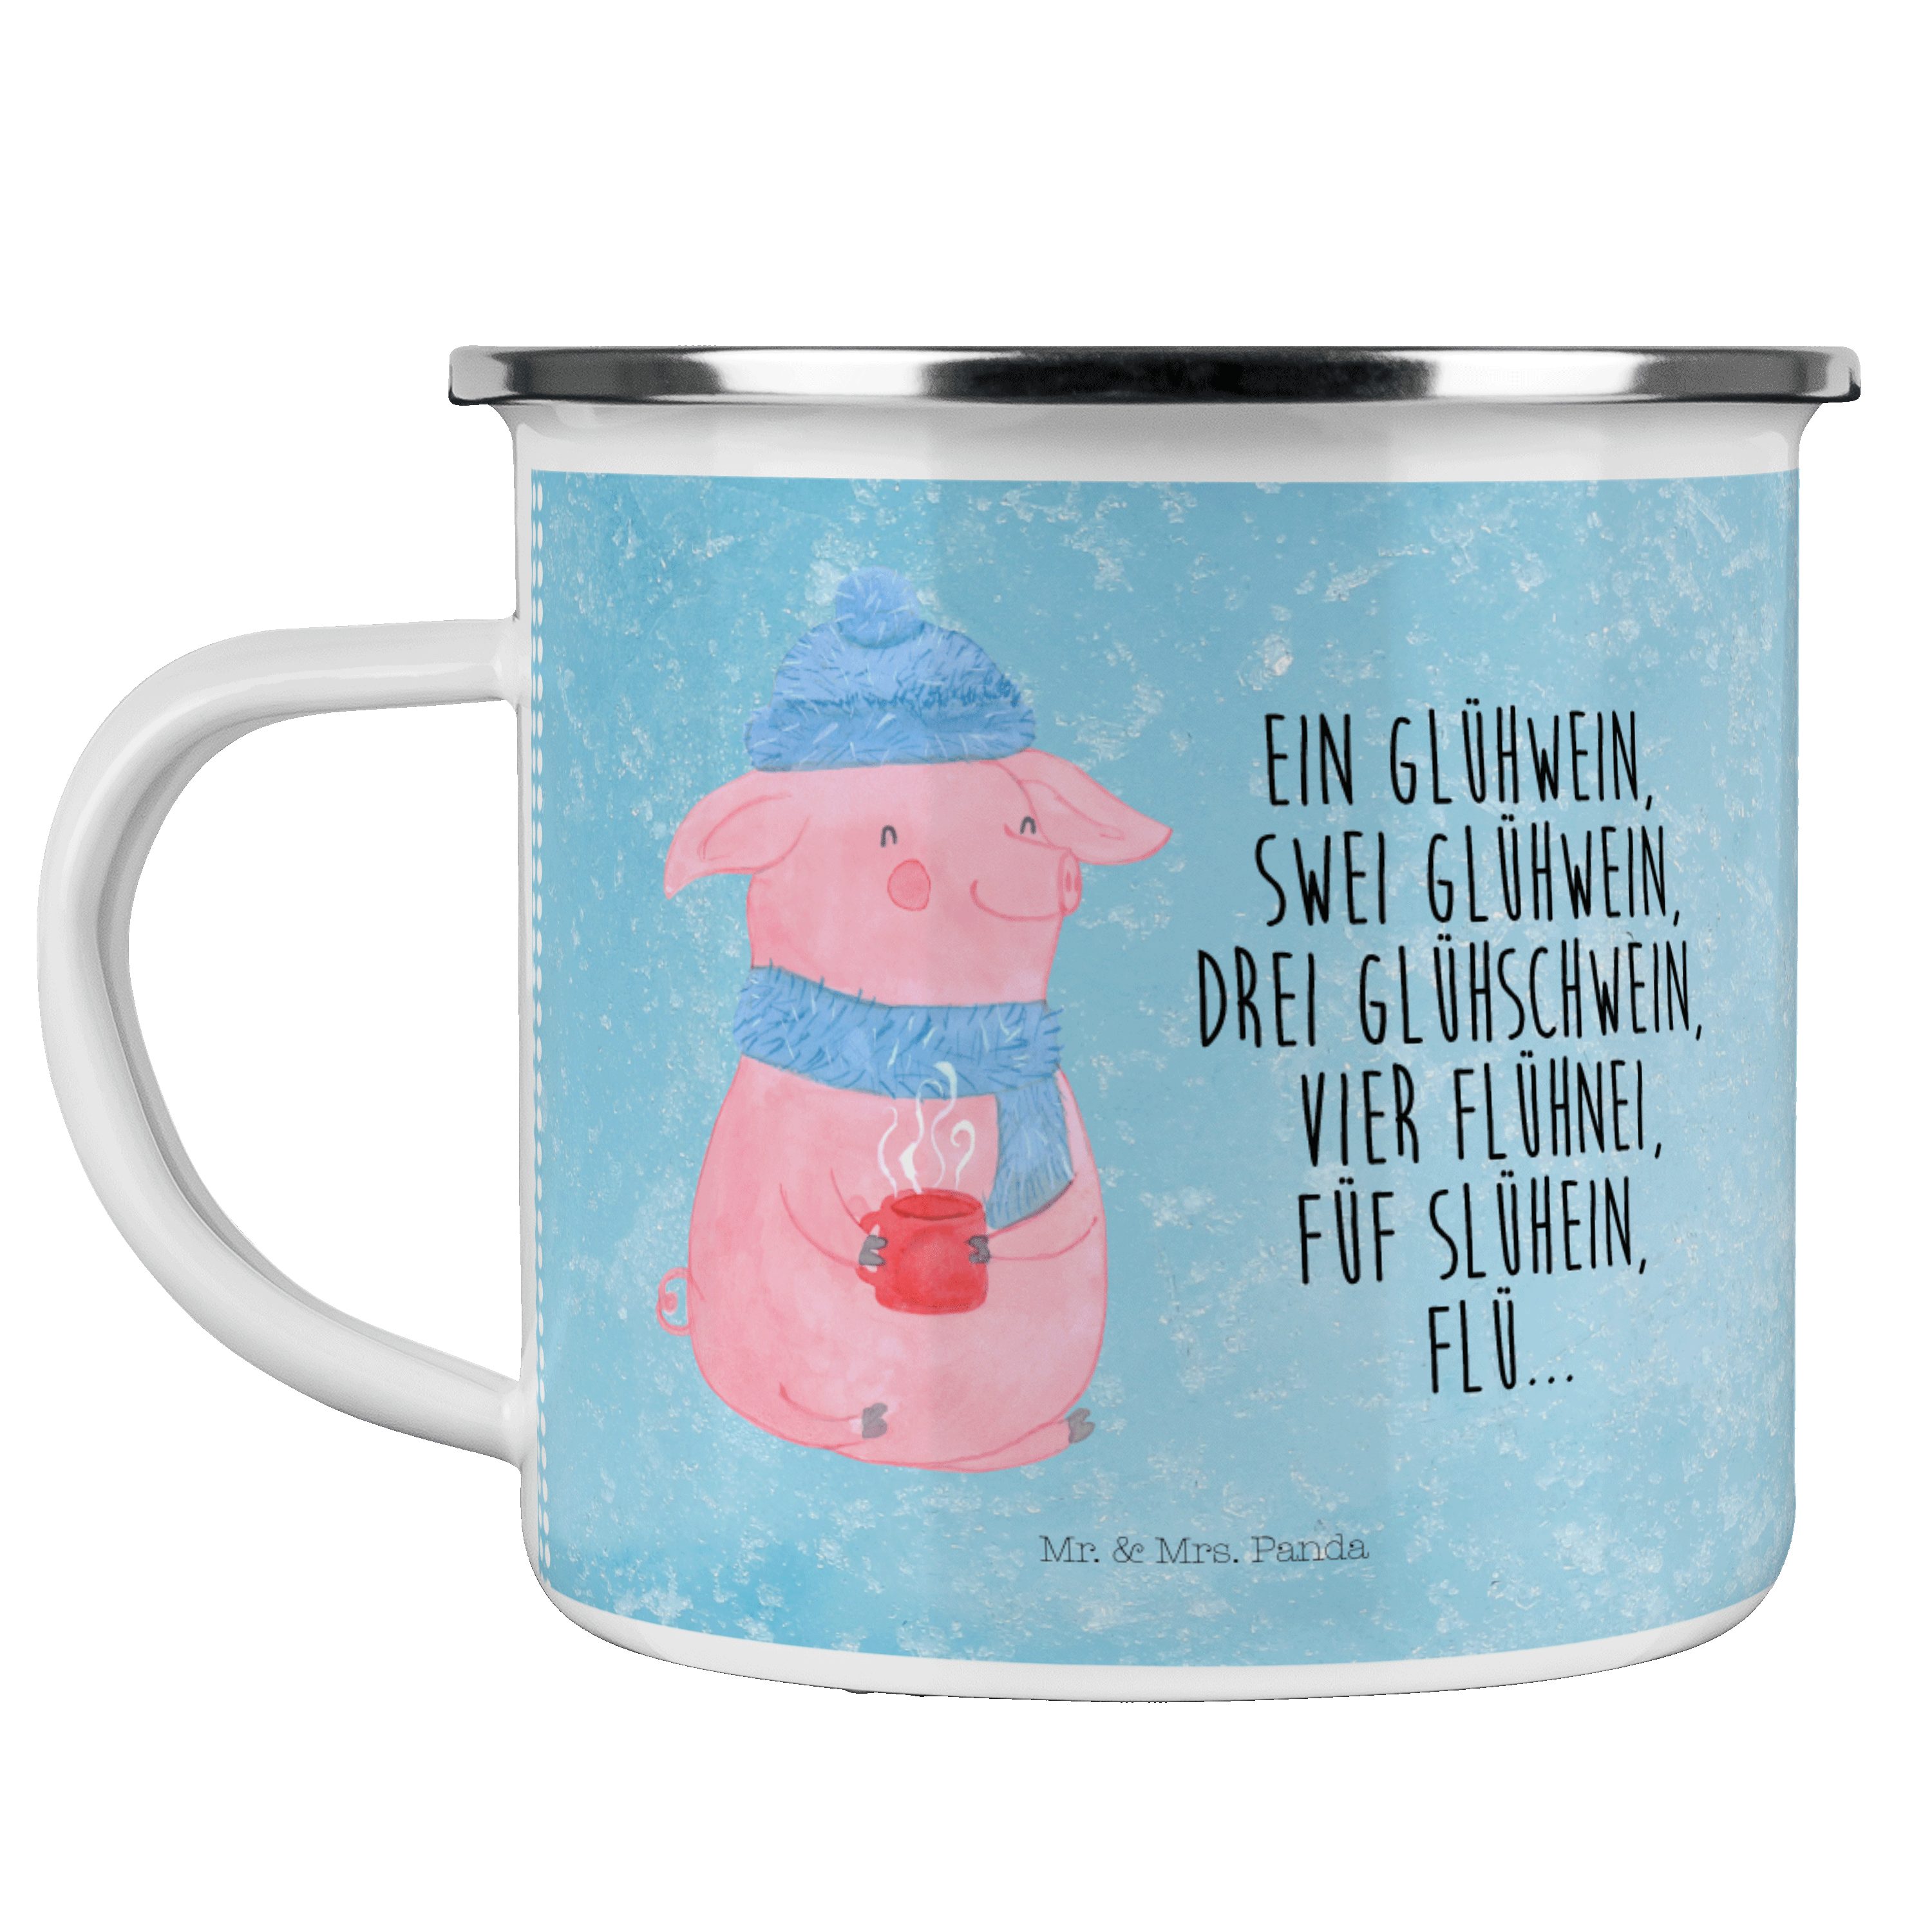 Mr. & Mrs. Panda Becher Lallelndes Glühschwein - Eisblau - Geschenk, Betrunken, Metalltasse, Emaille